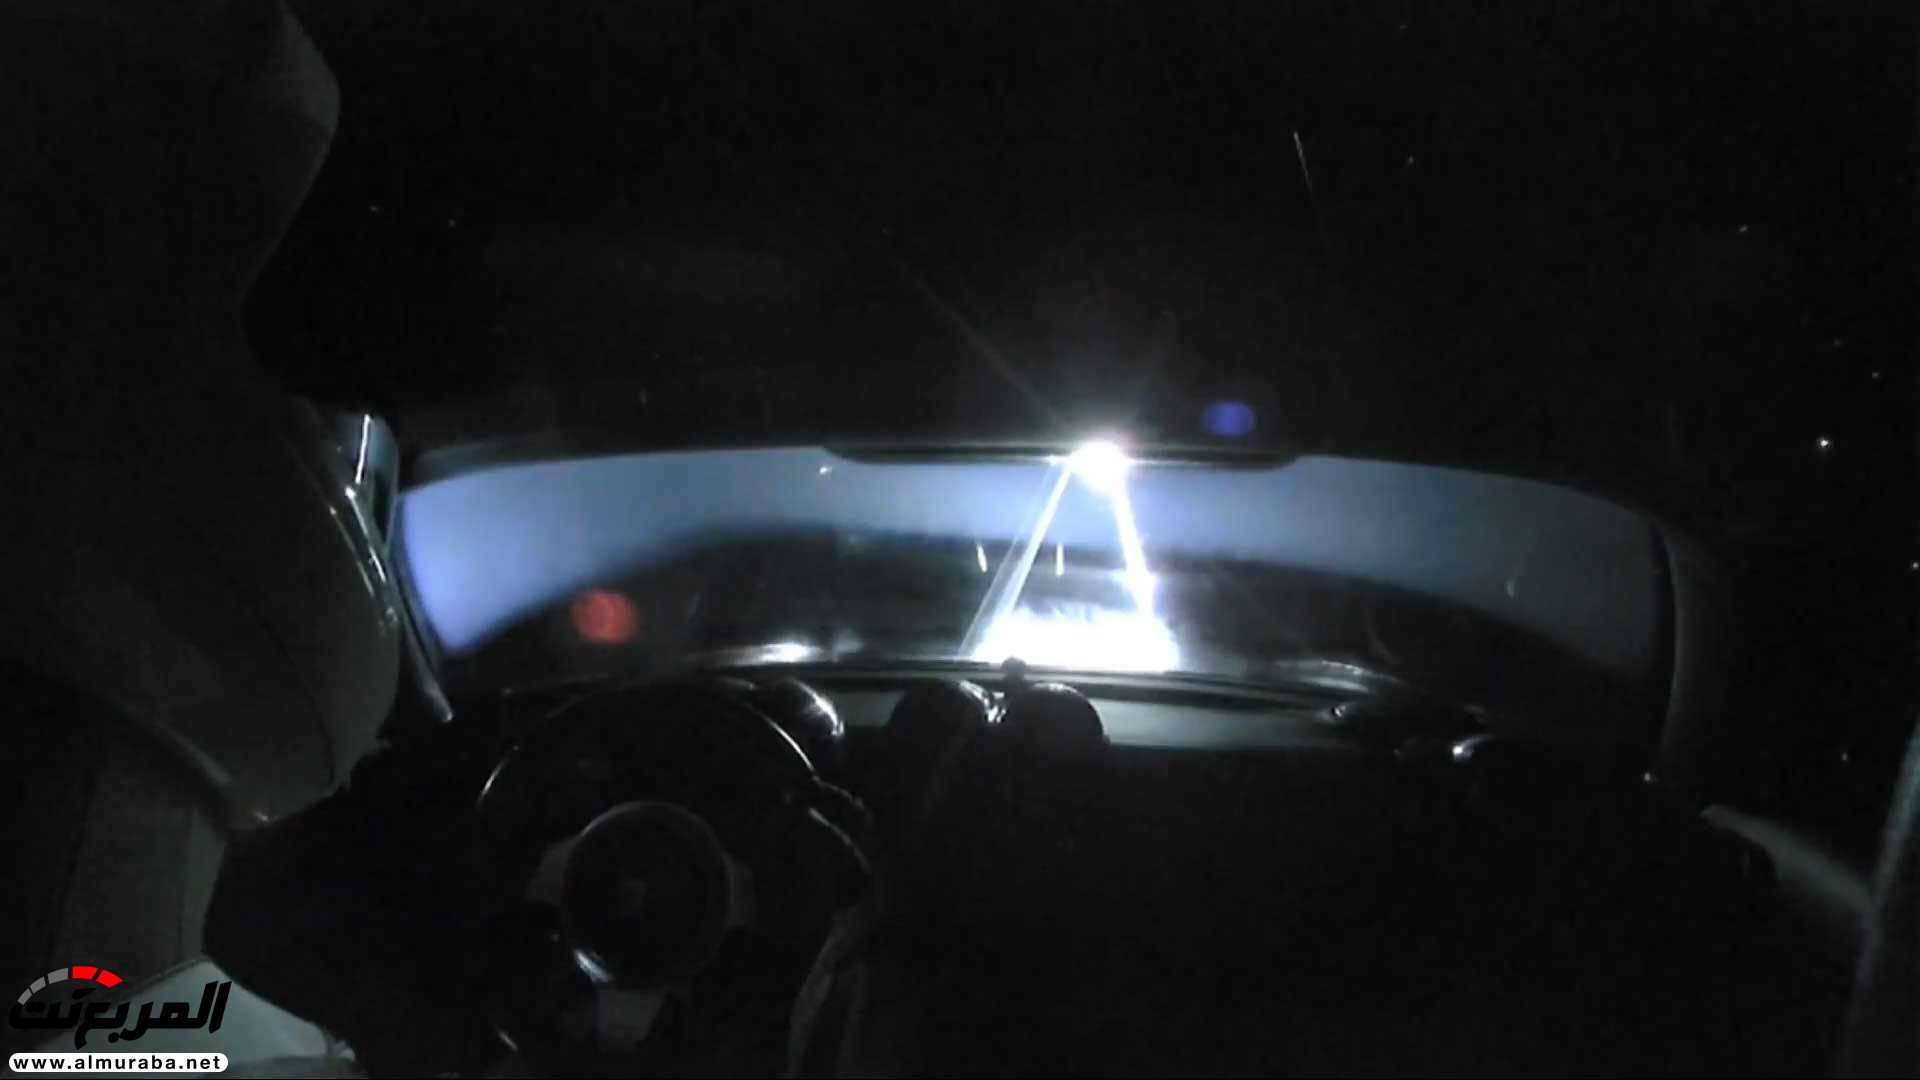 "بالفيديو والصور" إيلون ماسك يطلق تيسلا رودستر إلى المريخ في أقوى صاروخ بالعالم 10